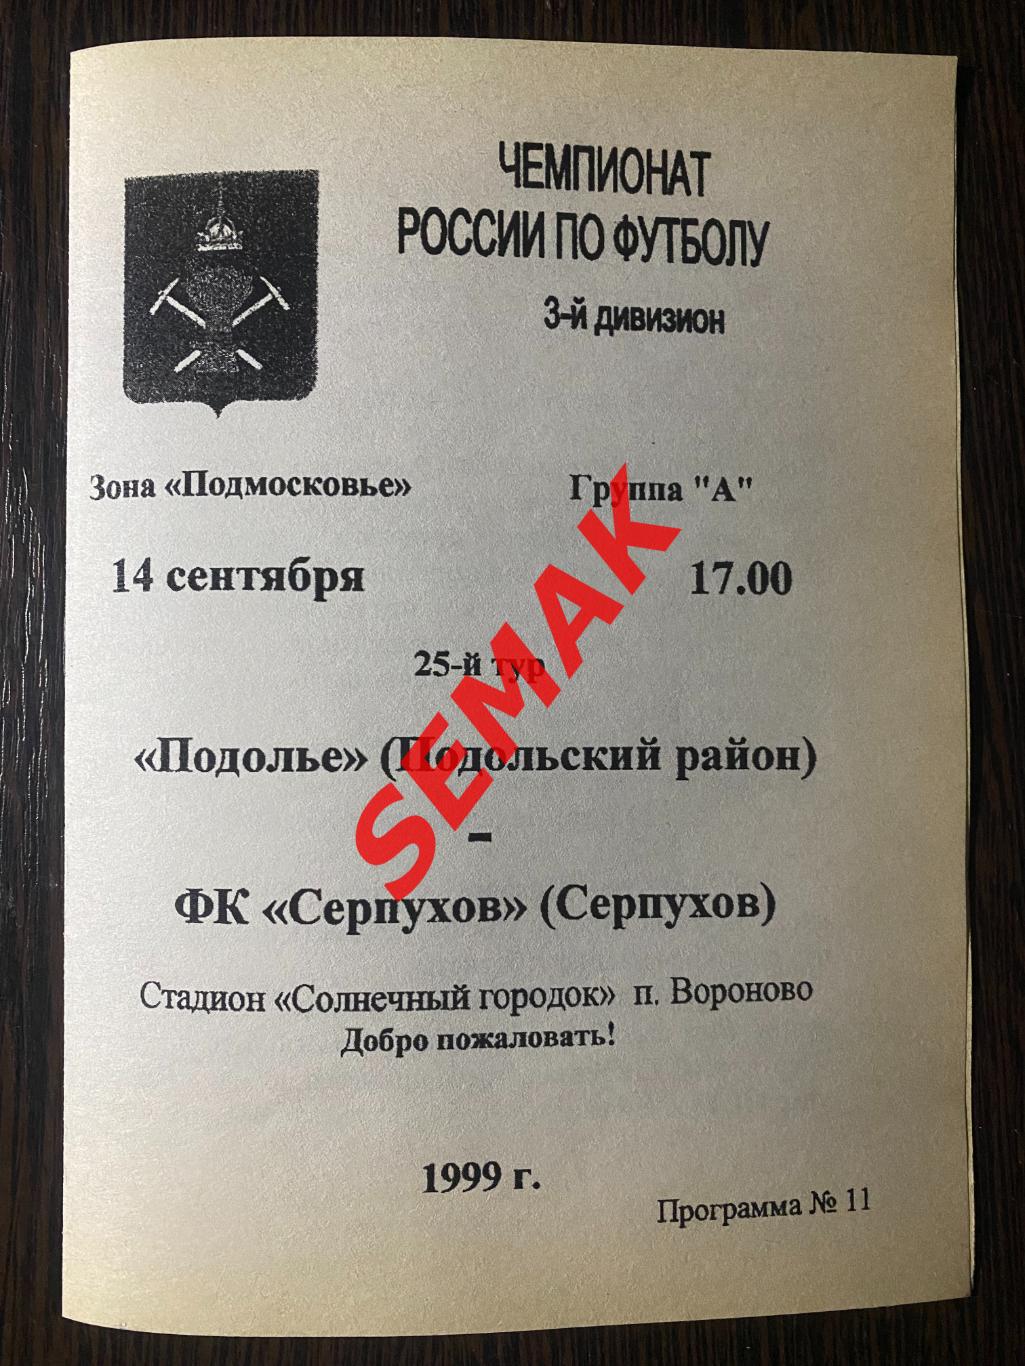 Подолье Подольский р-н - Серпухов - 14.09.1999 1